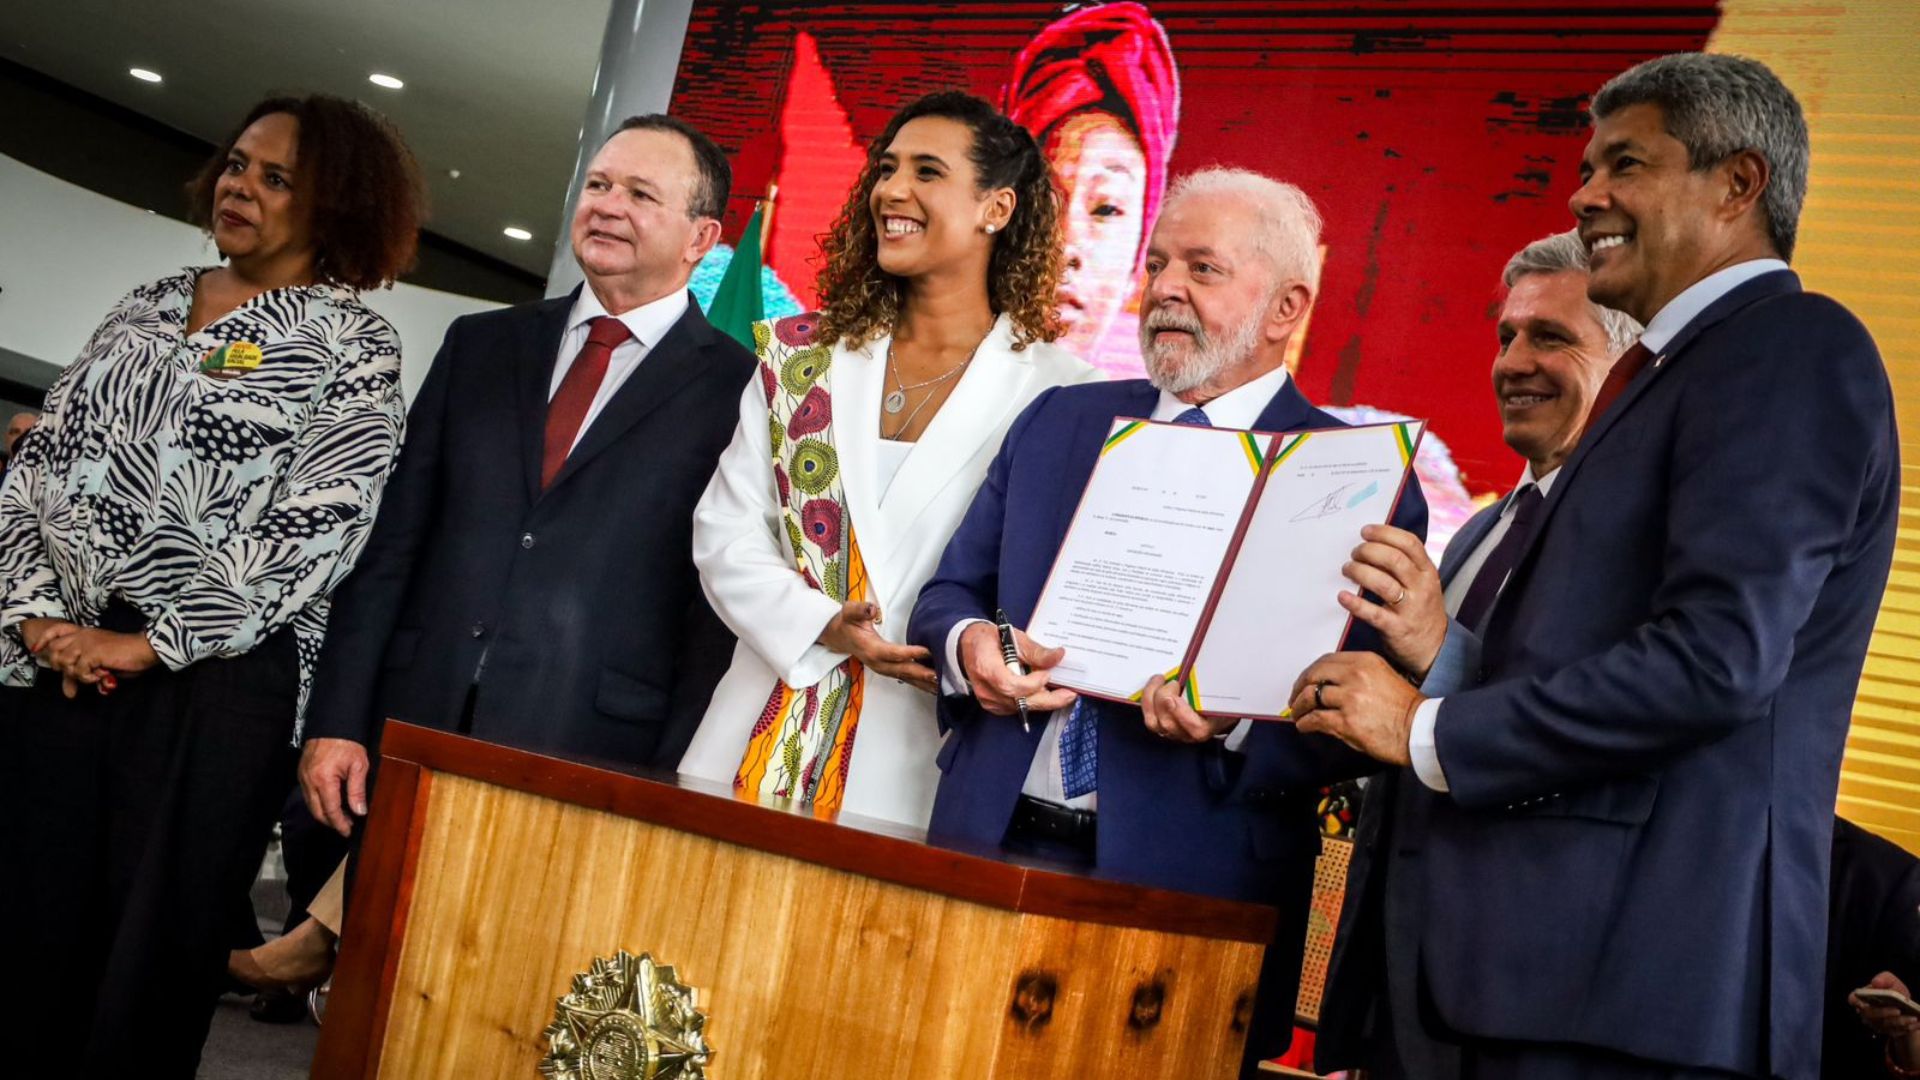 Medida propõe mais direitos e equiparação de oportunidades para mulheres, pessoas negras, quilombolas, indígenas ou com deficiência